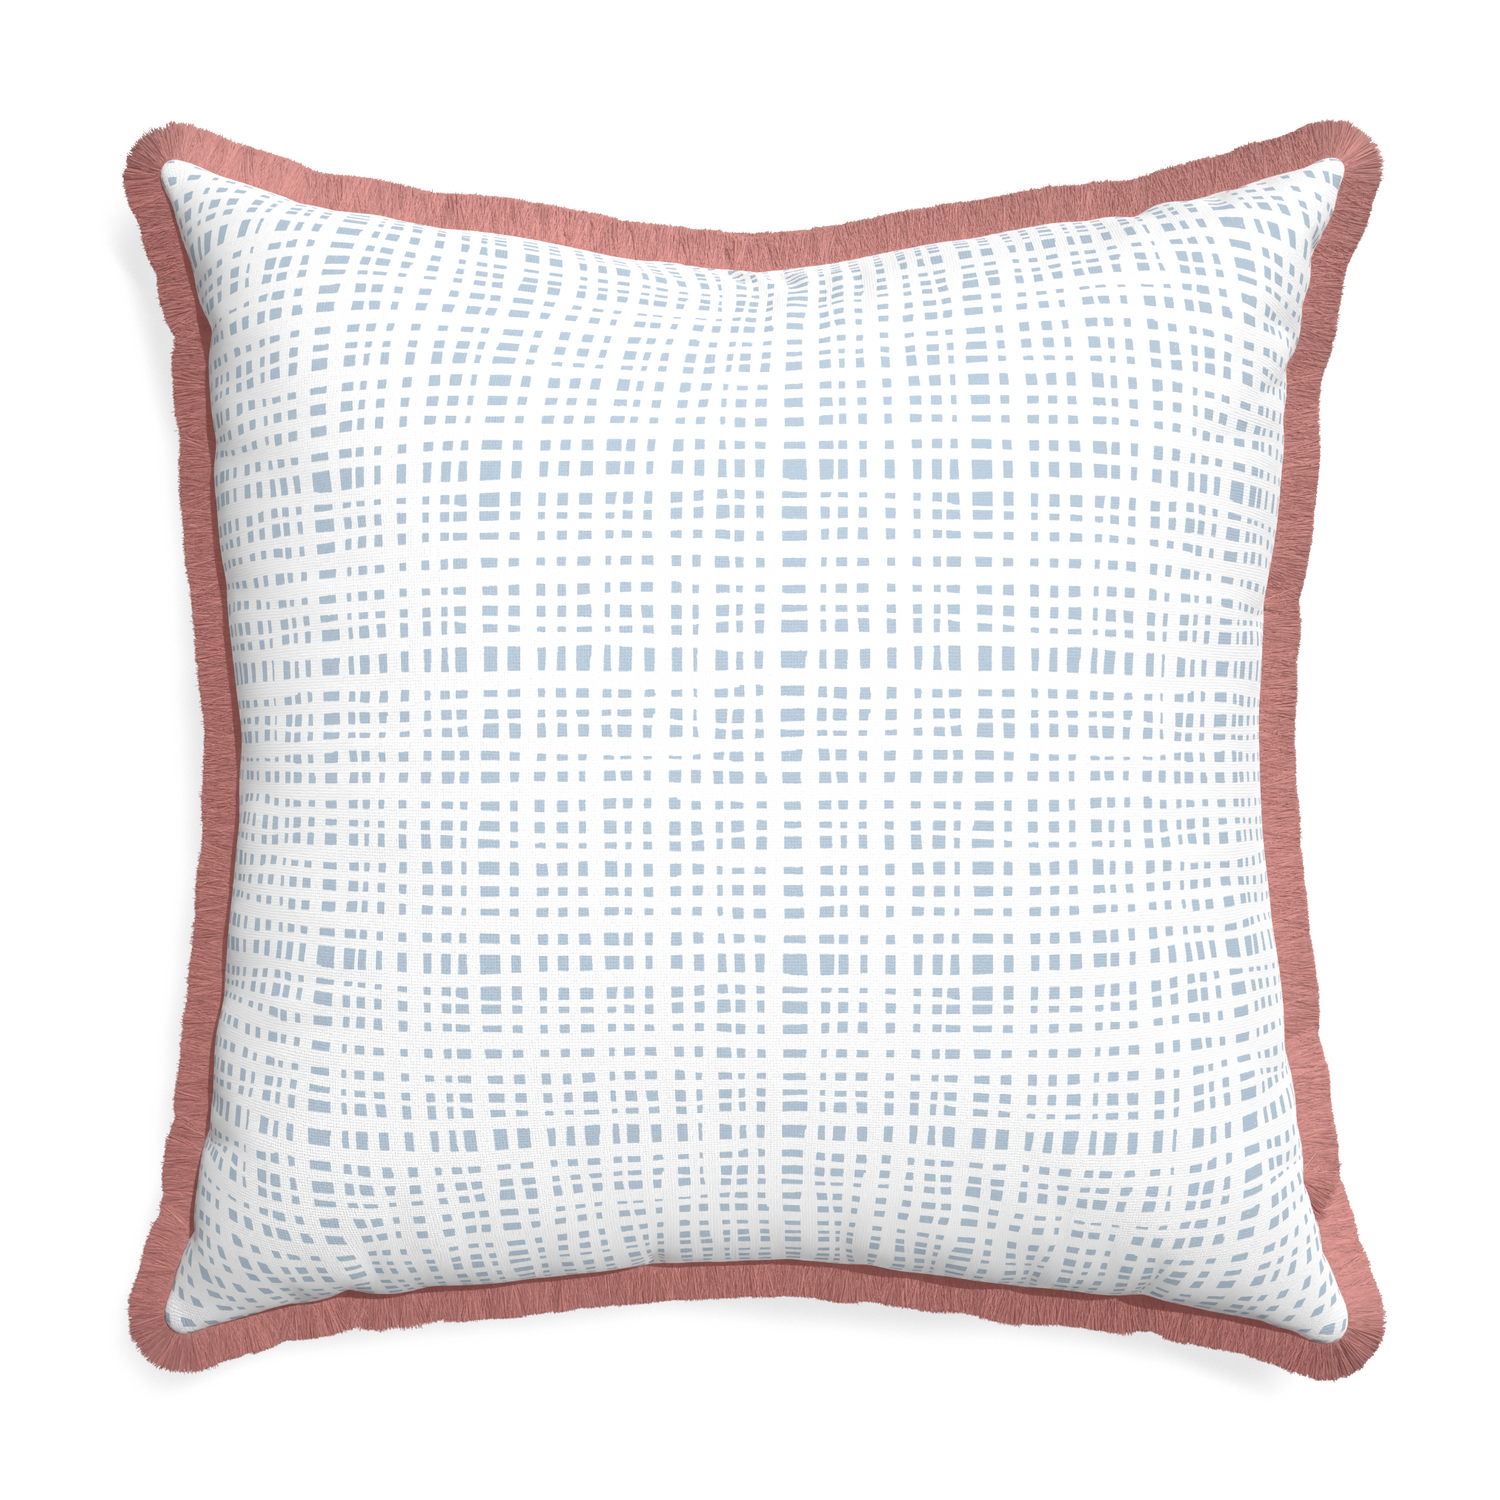 Euro-sham ginger sky custom pillow with d fringe on white background